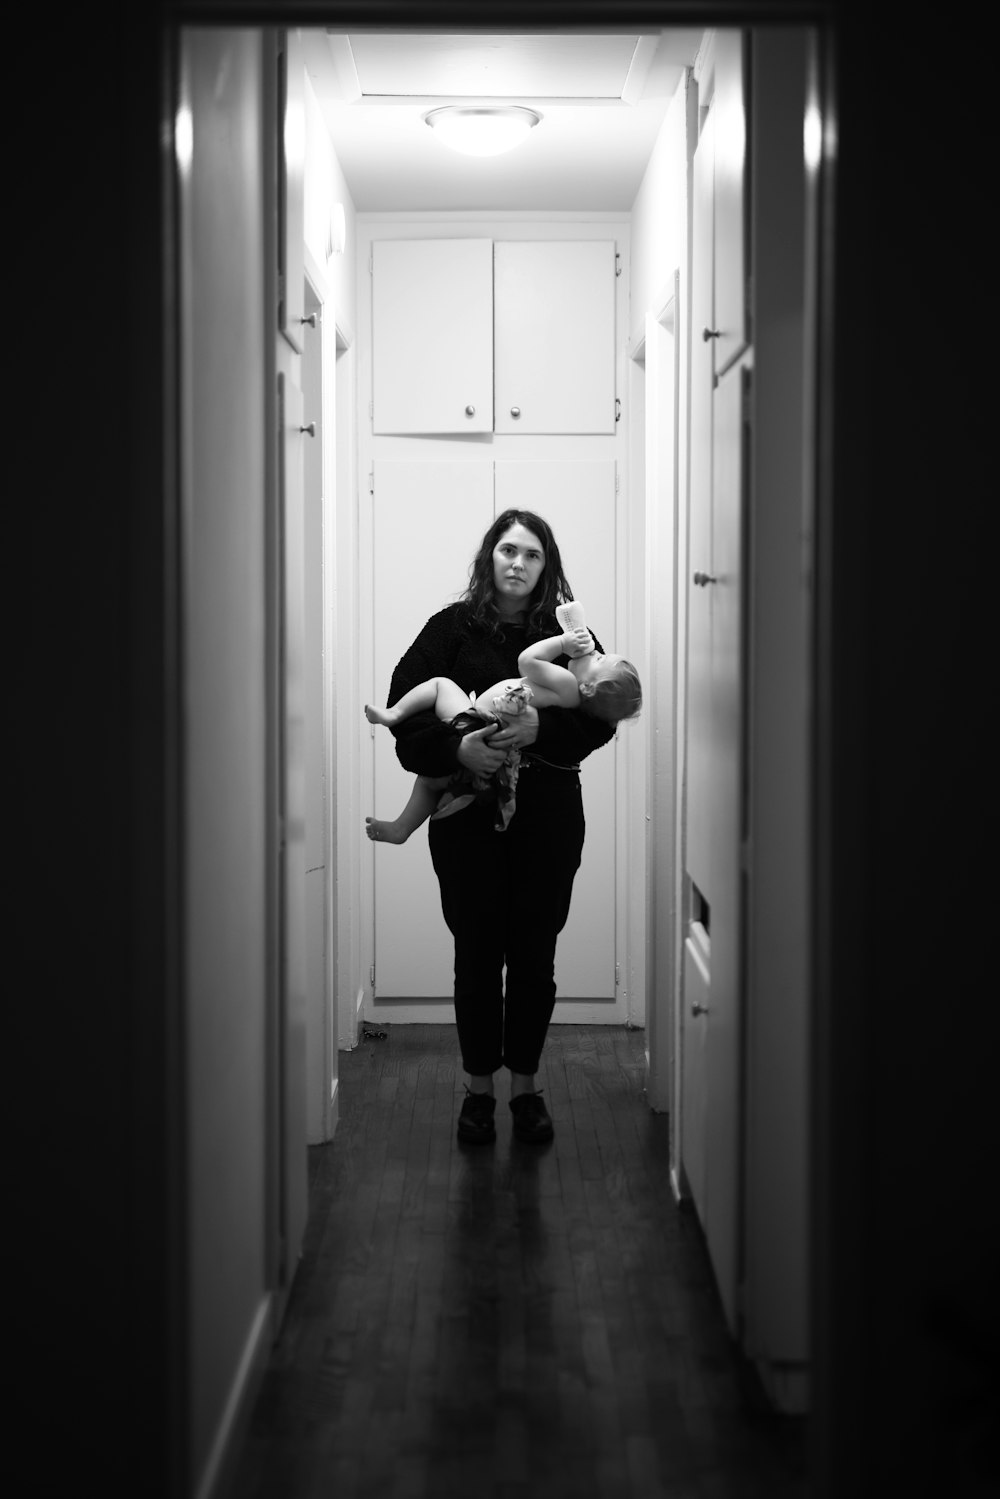 グレースケール写真で赤ん坊を運ぶ黒い長袖シャツの女性